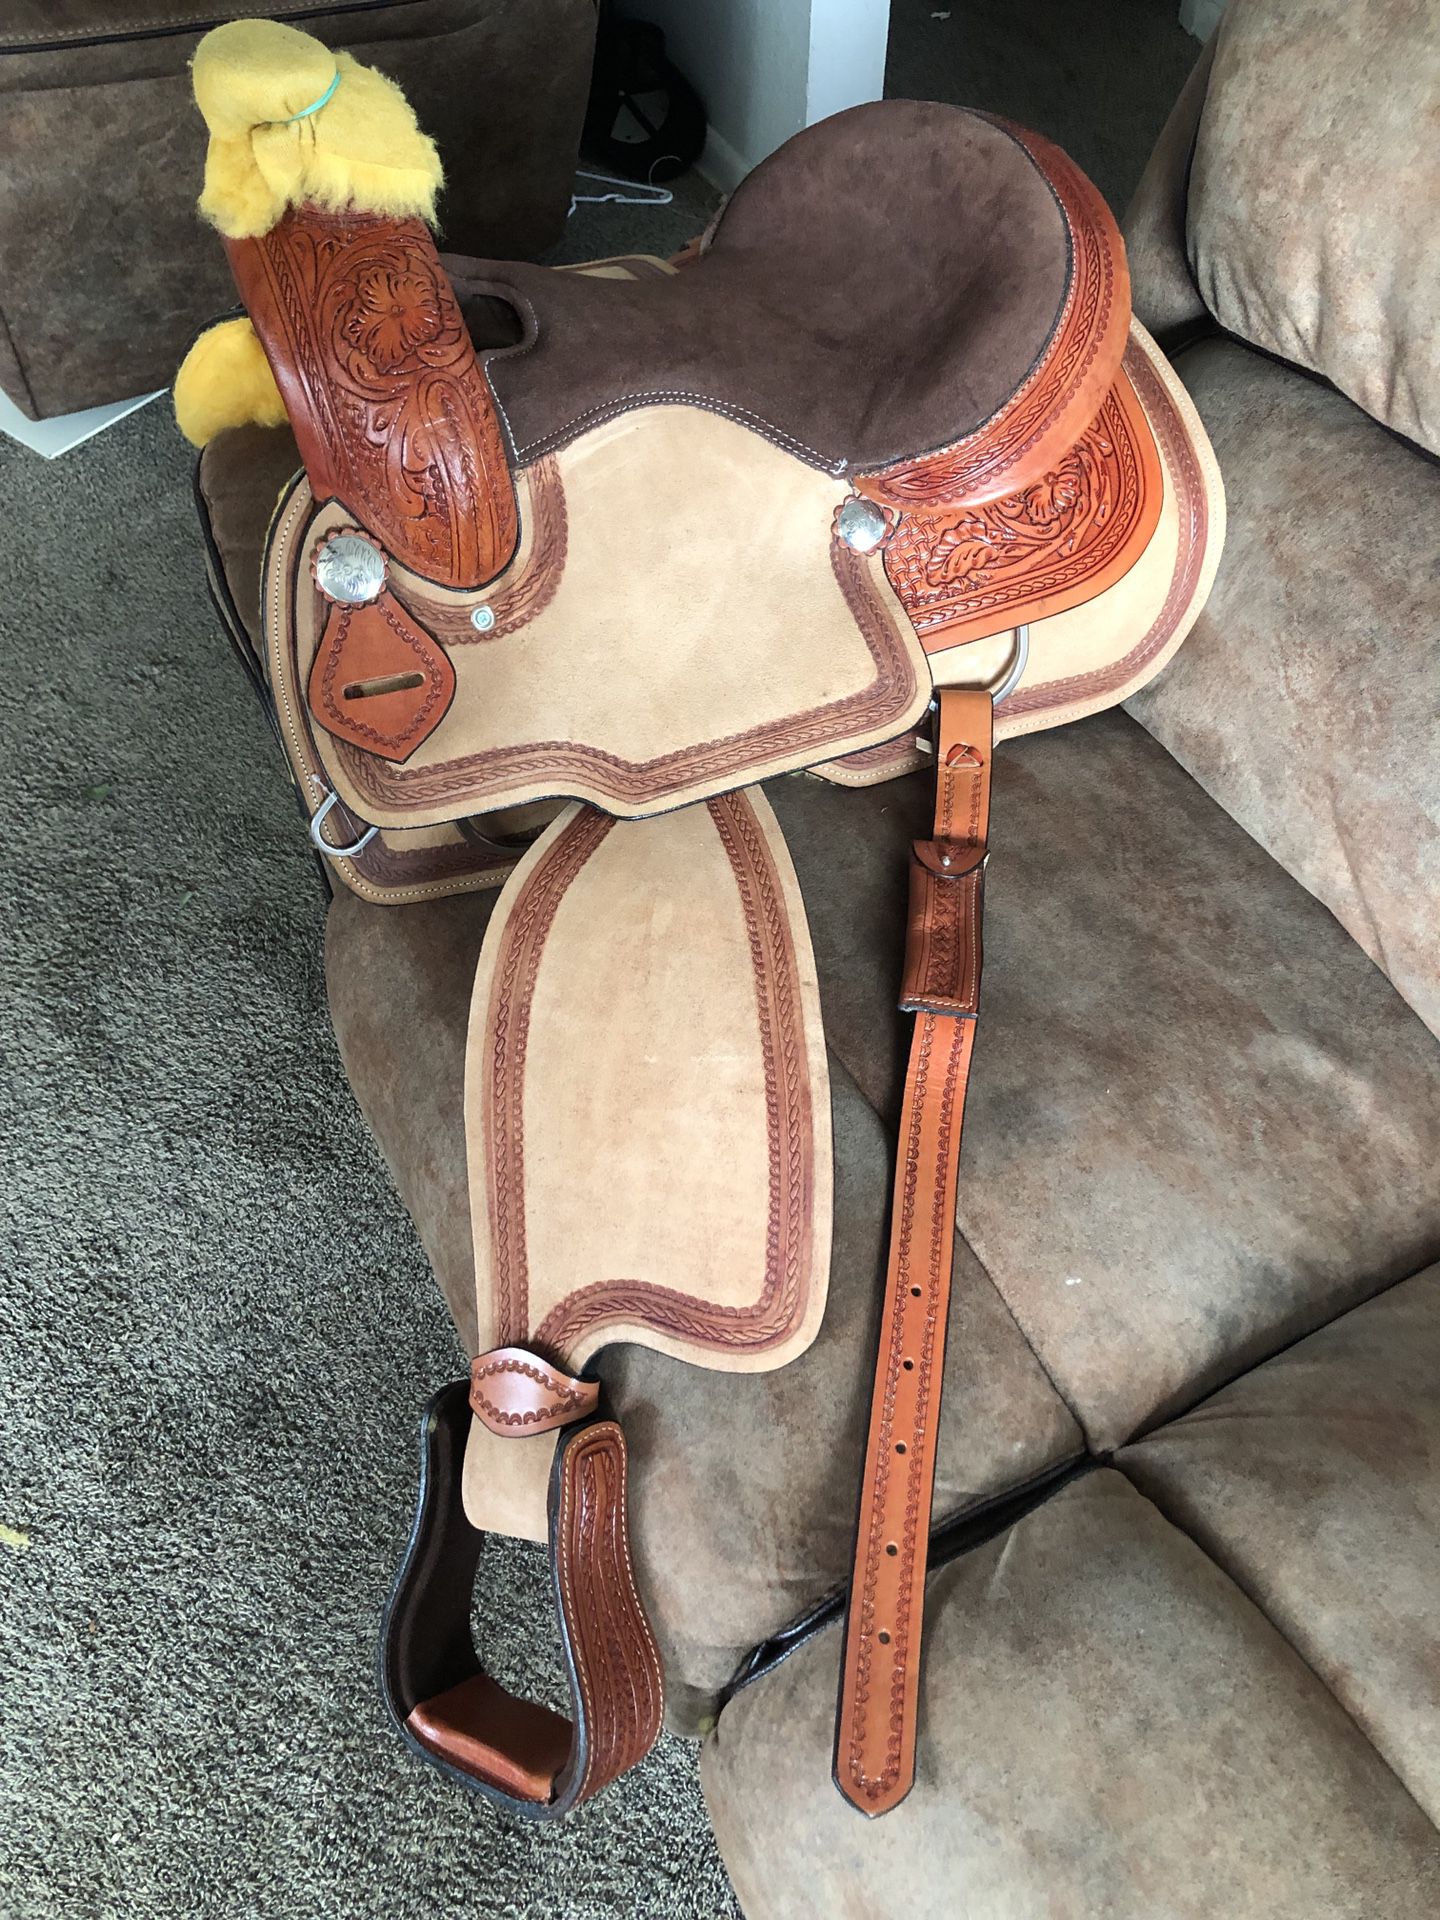 Western saddle15”